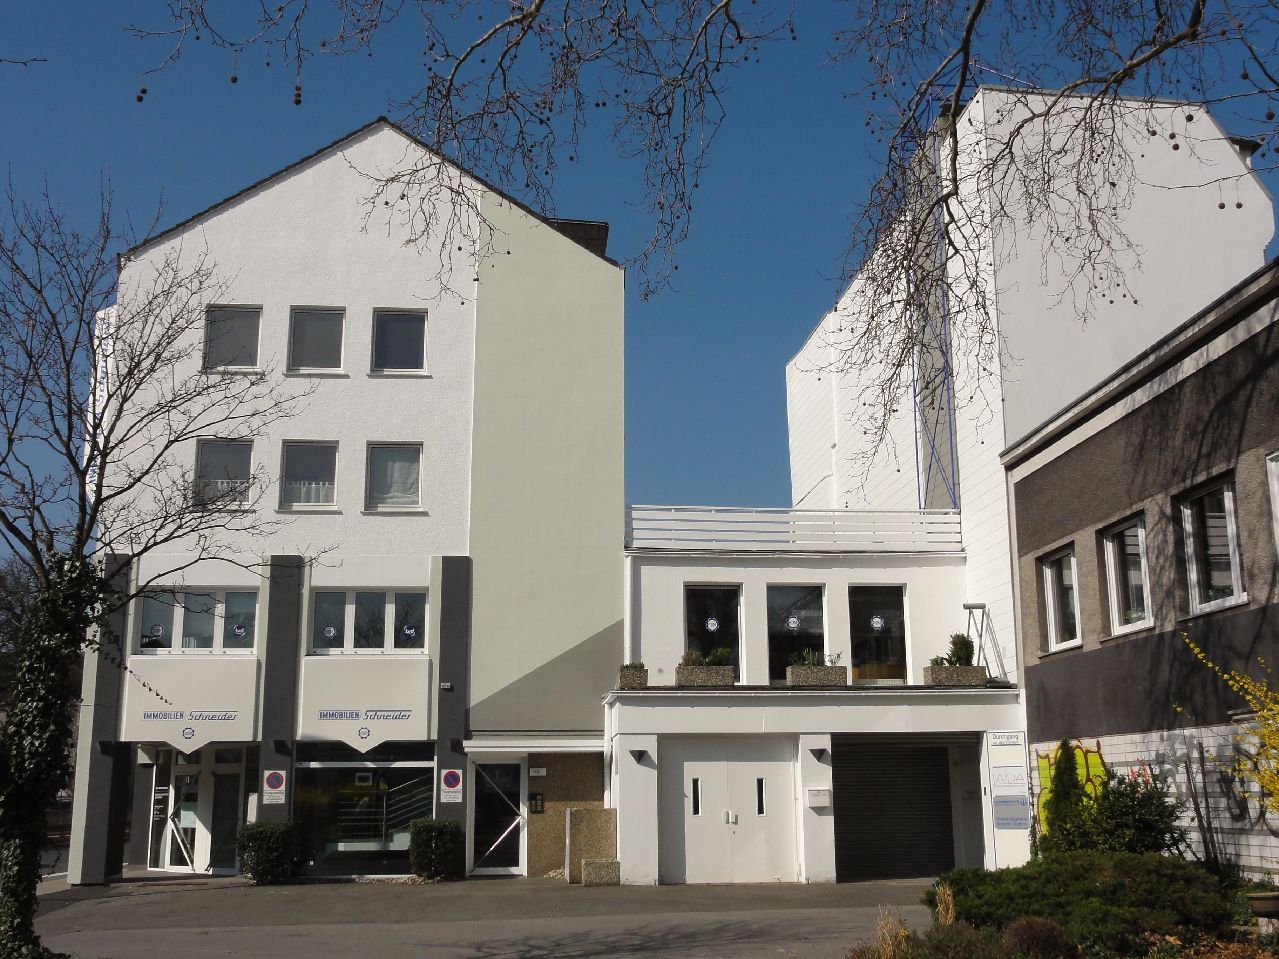 Ca. 25,56 m² Appartement in der Hamburger Str. 50 zu vermieten!